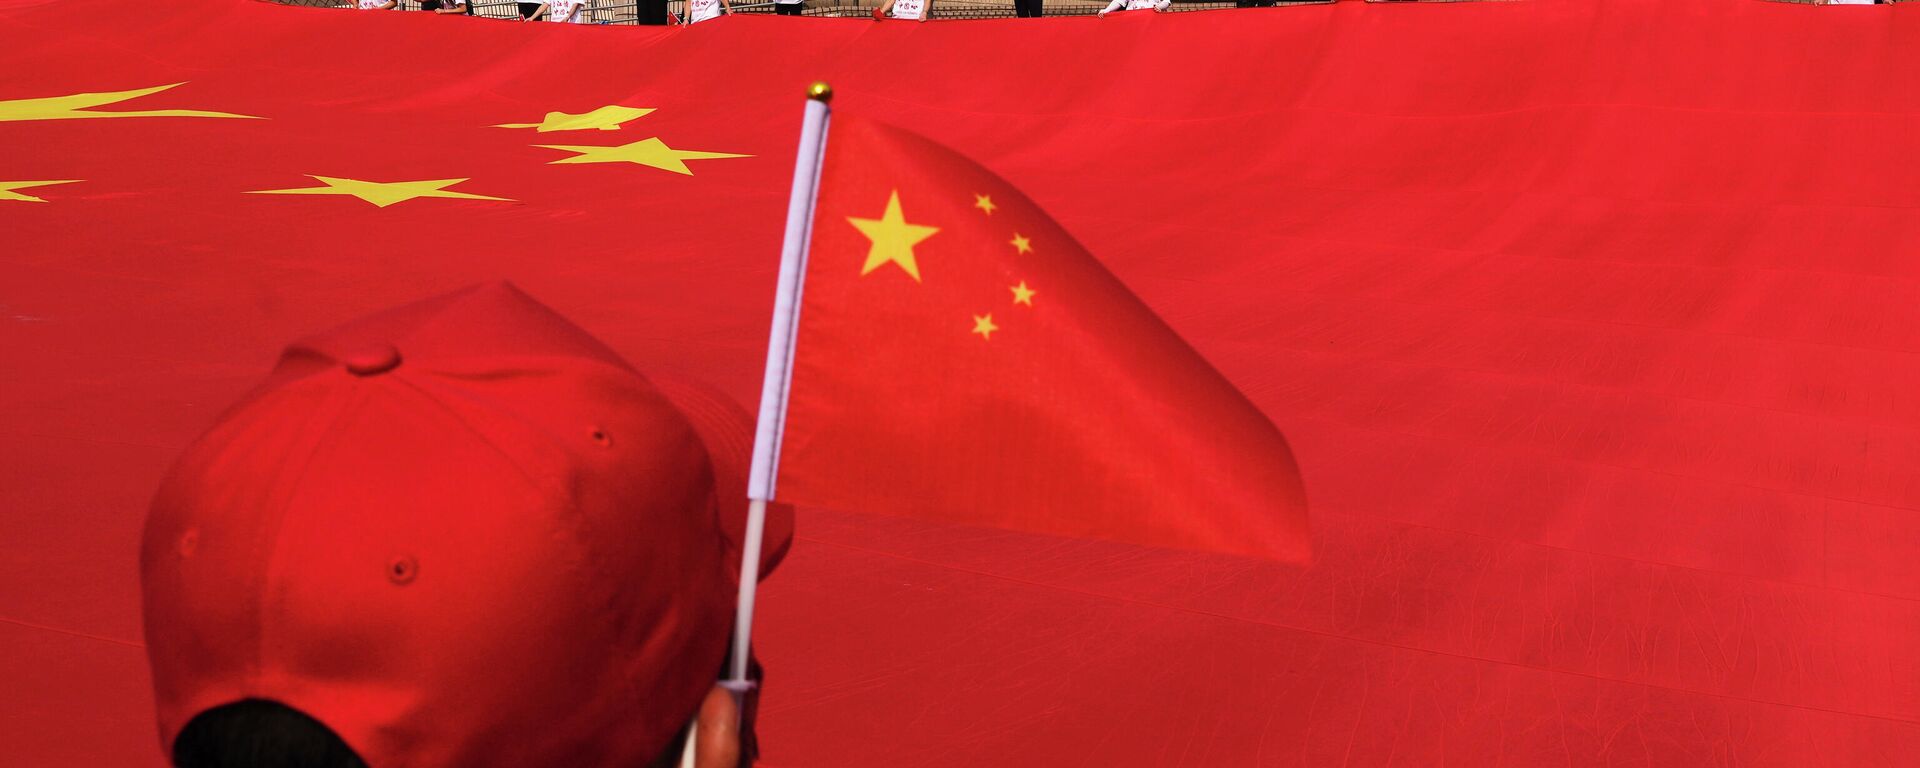 Китайский национальный флаг во время церемонии празднования 72-го Национального дня Китая - Sputnik Узбекистан, 1920, 05.10.2021